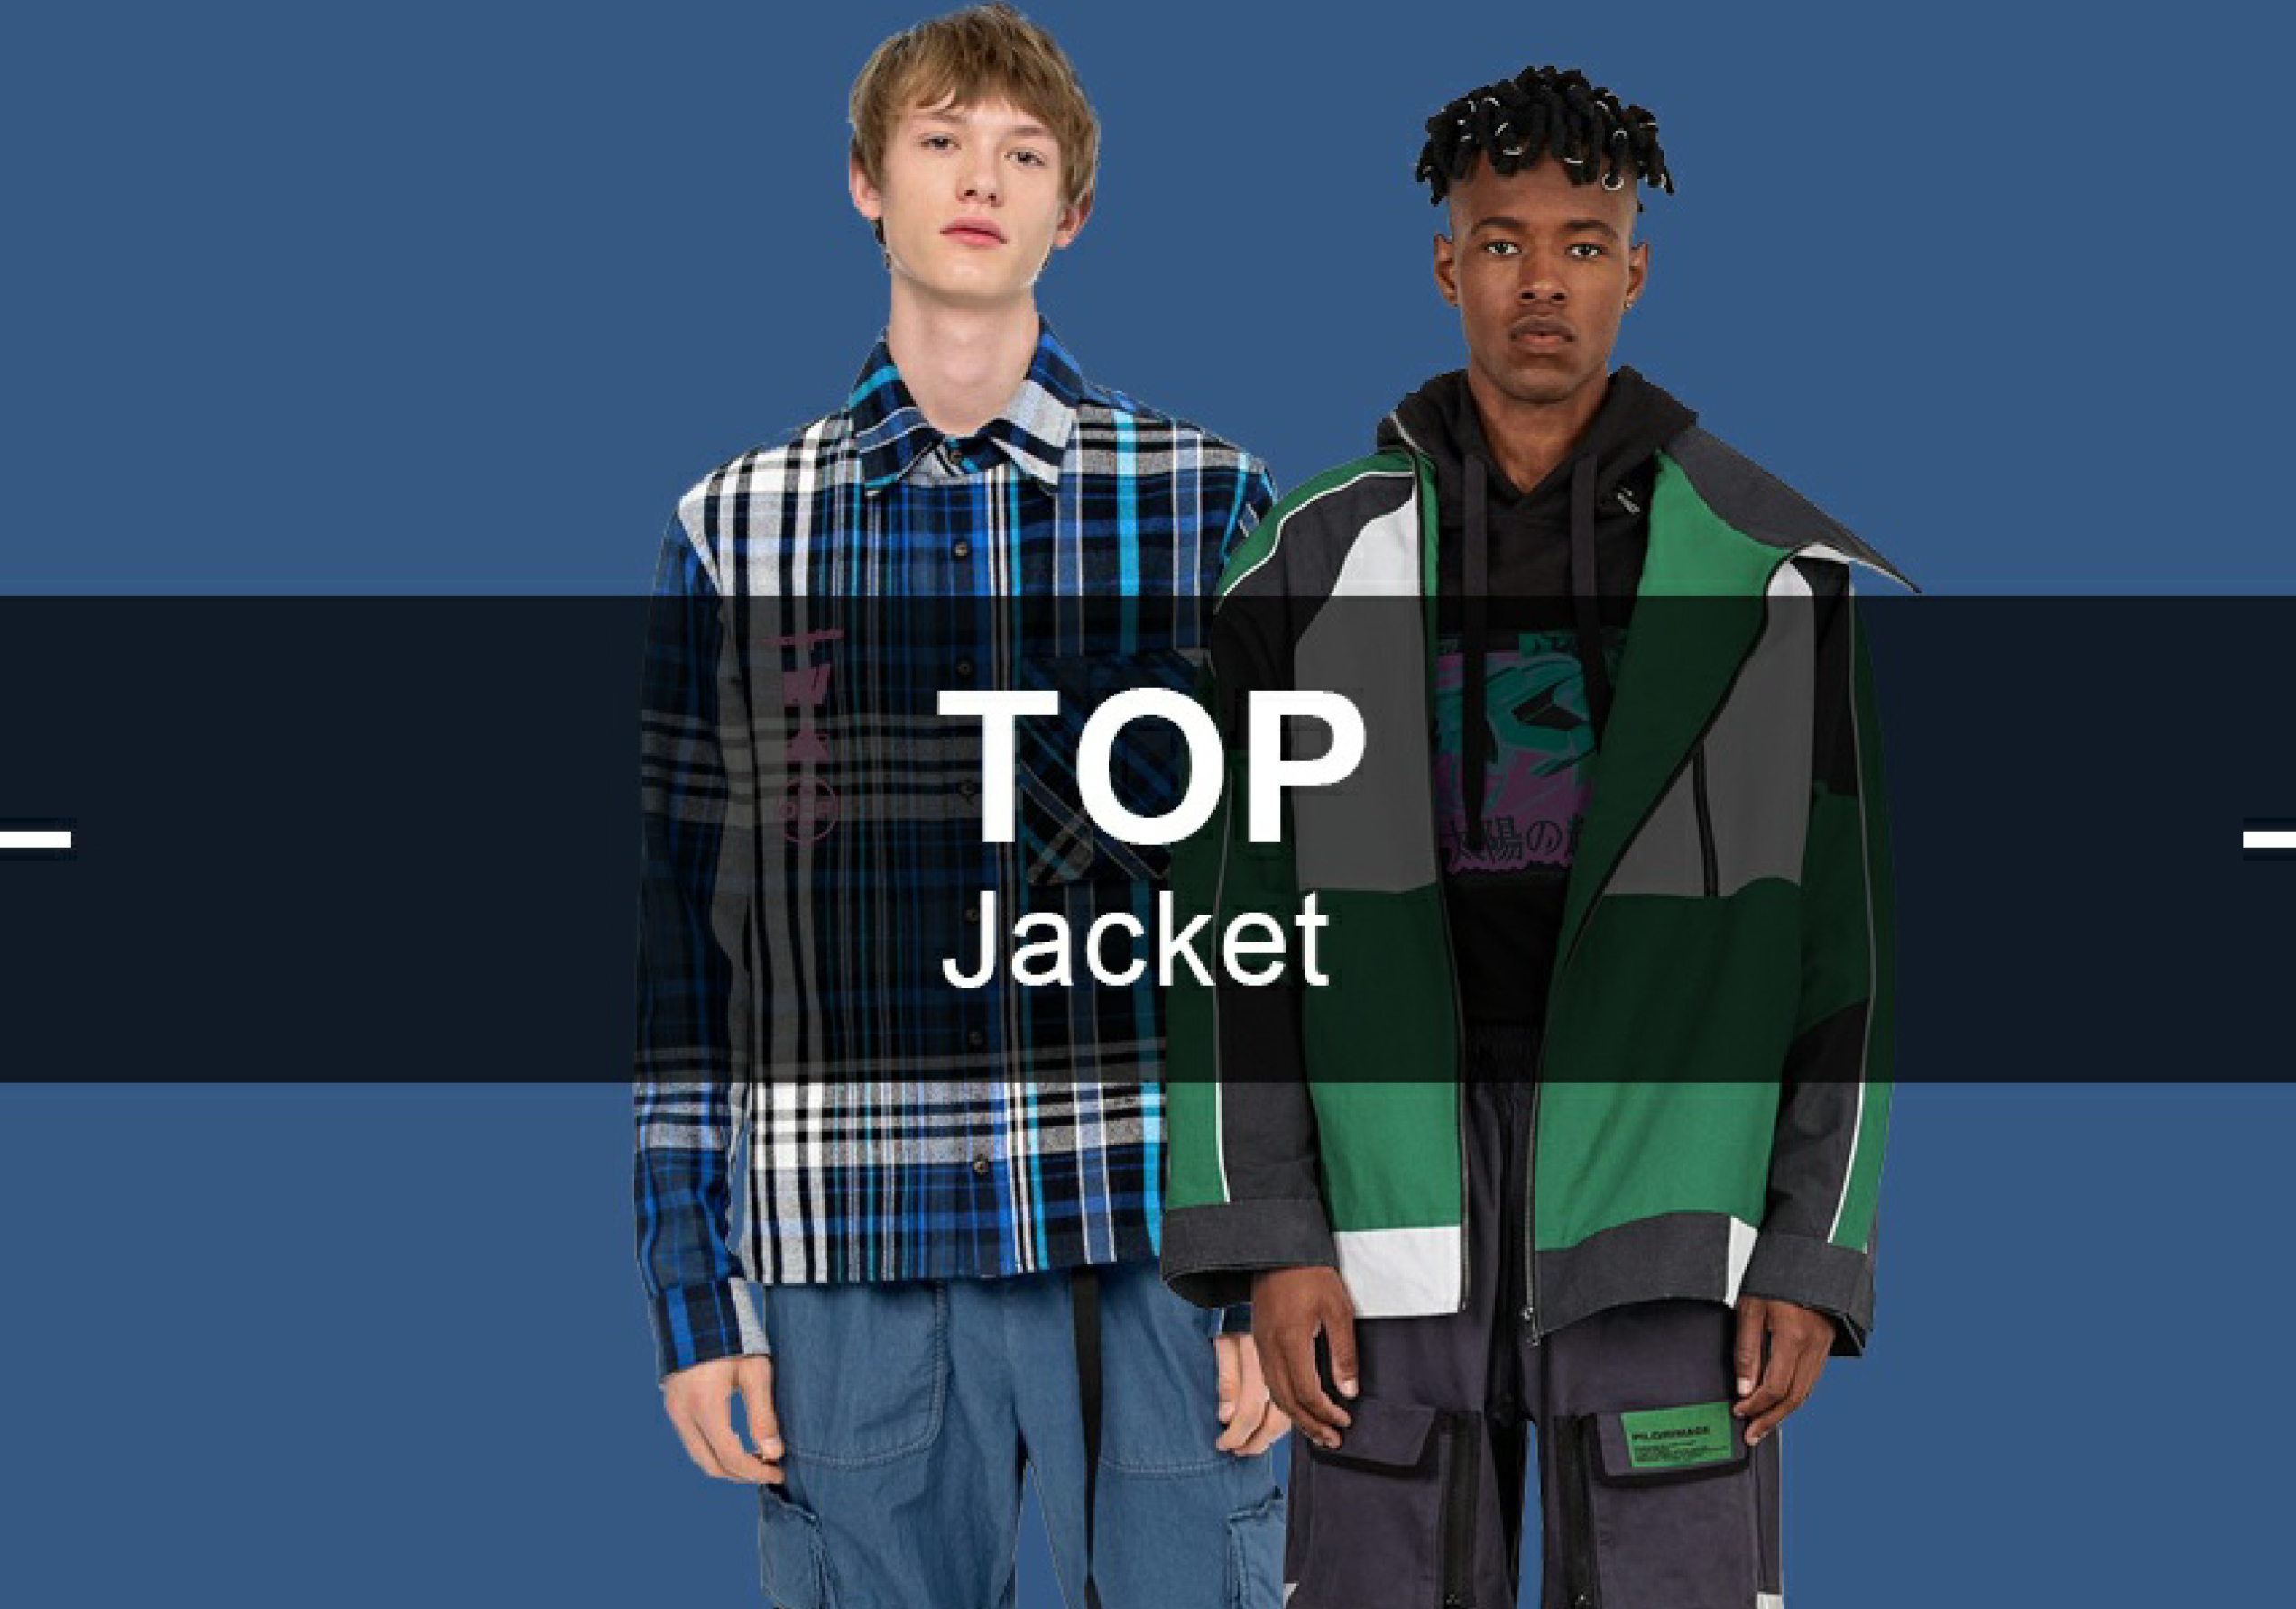 The Jacket -- Popular Items in Menswear Markets